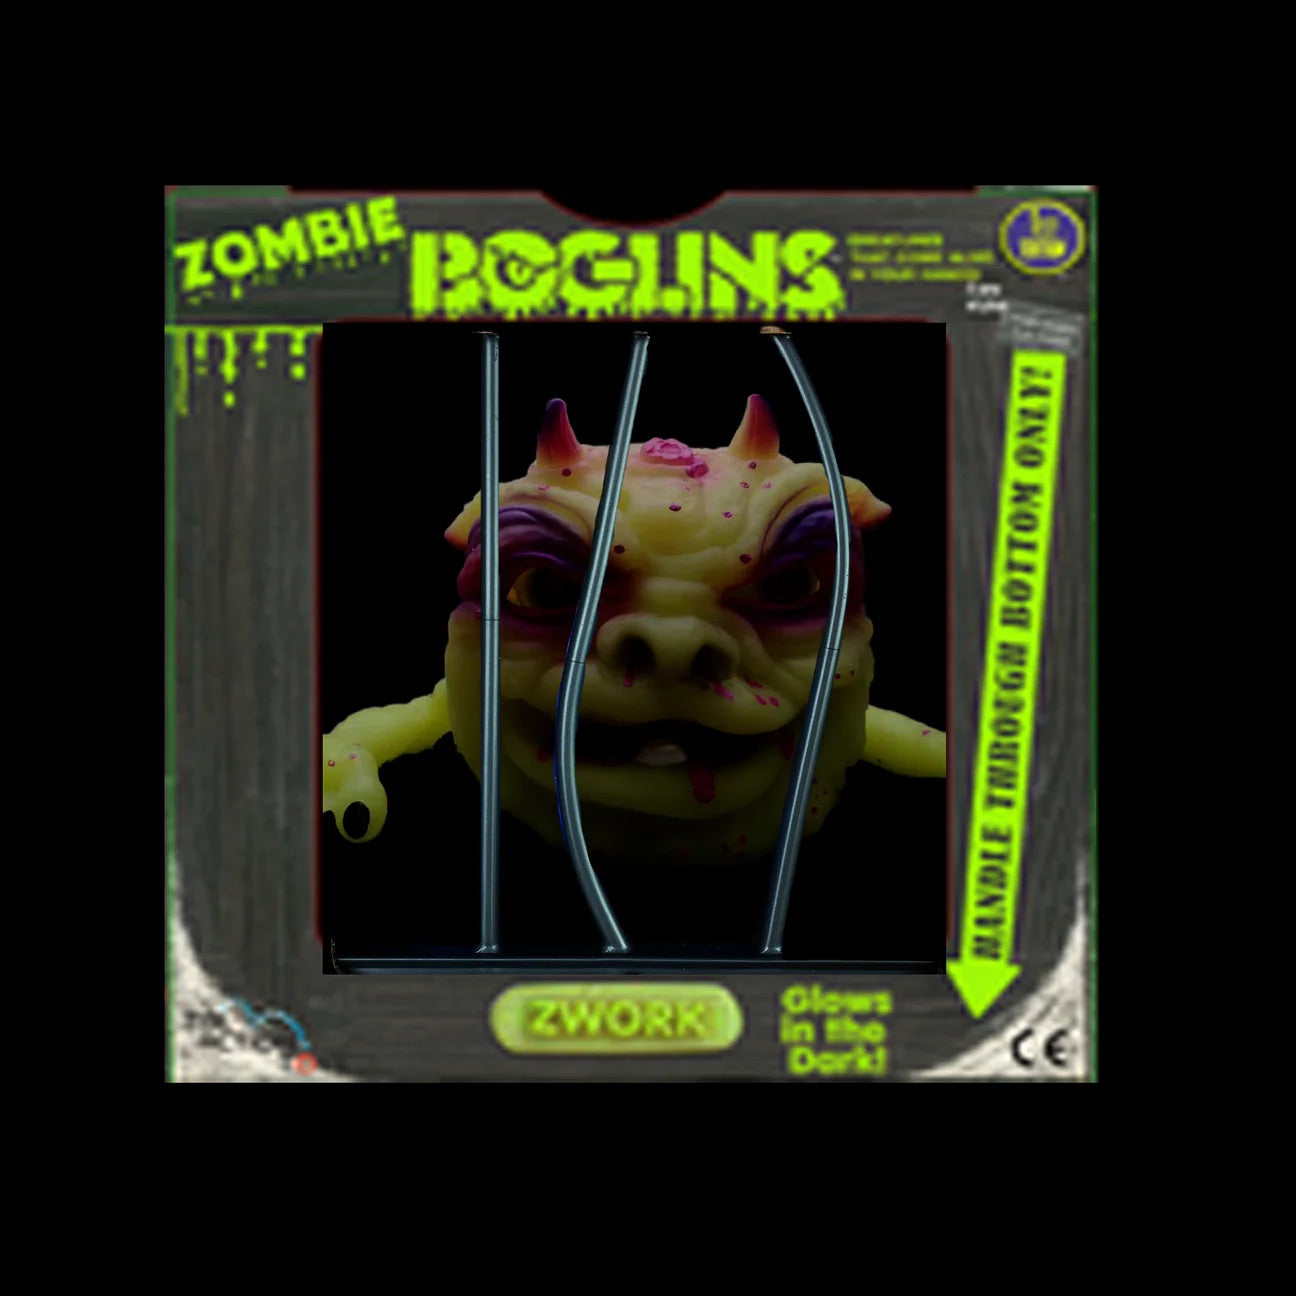 Boglins Zombie Zwork in Cage